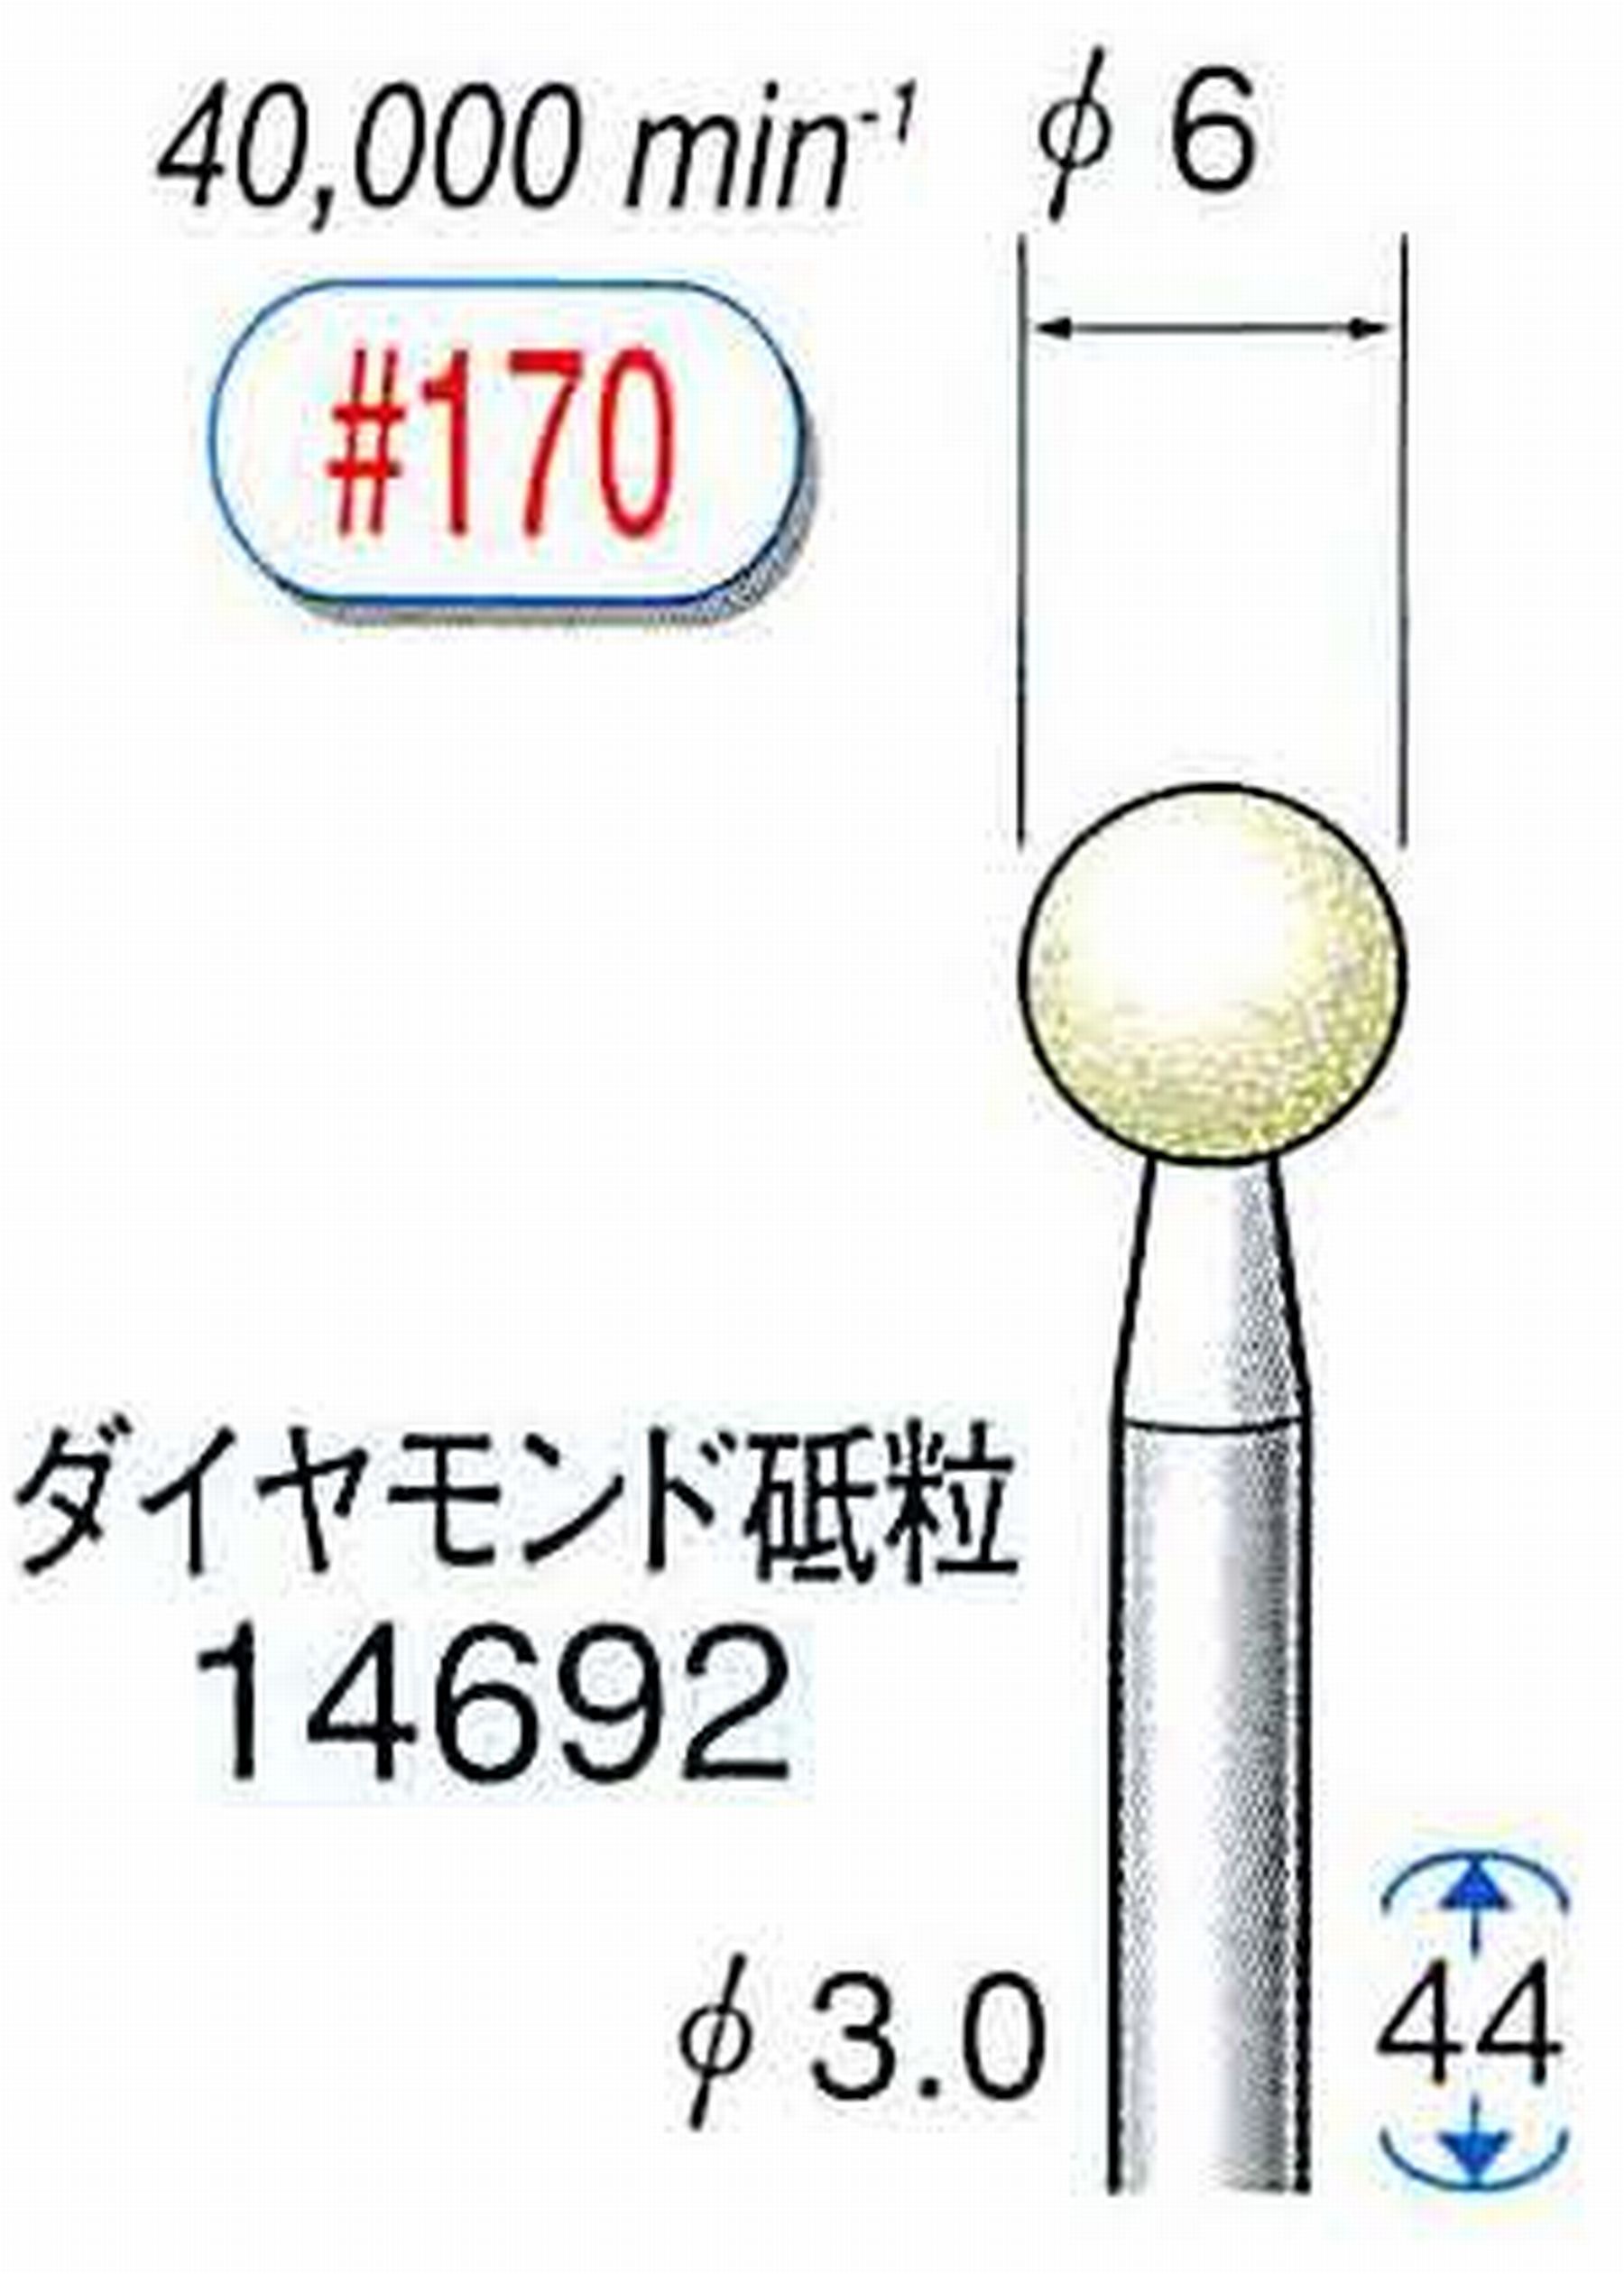 ナカニシ/NAKANISHI セラミックダイヤモンド砥石 ダイヤモンド砥粒 軸径(シャンク)φ3.0mm 14692